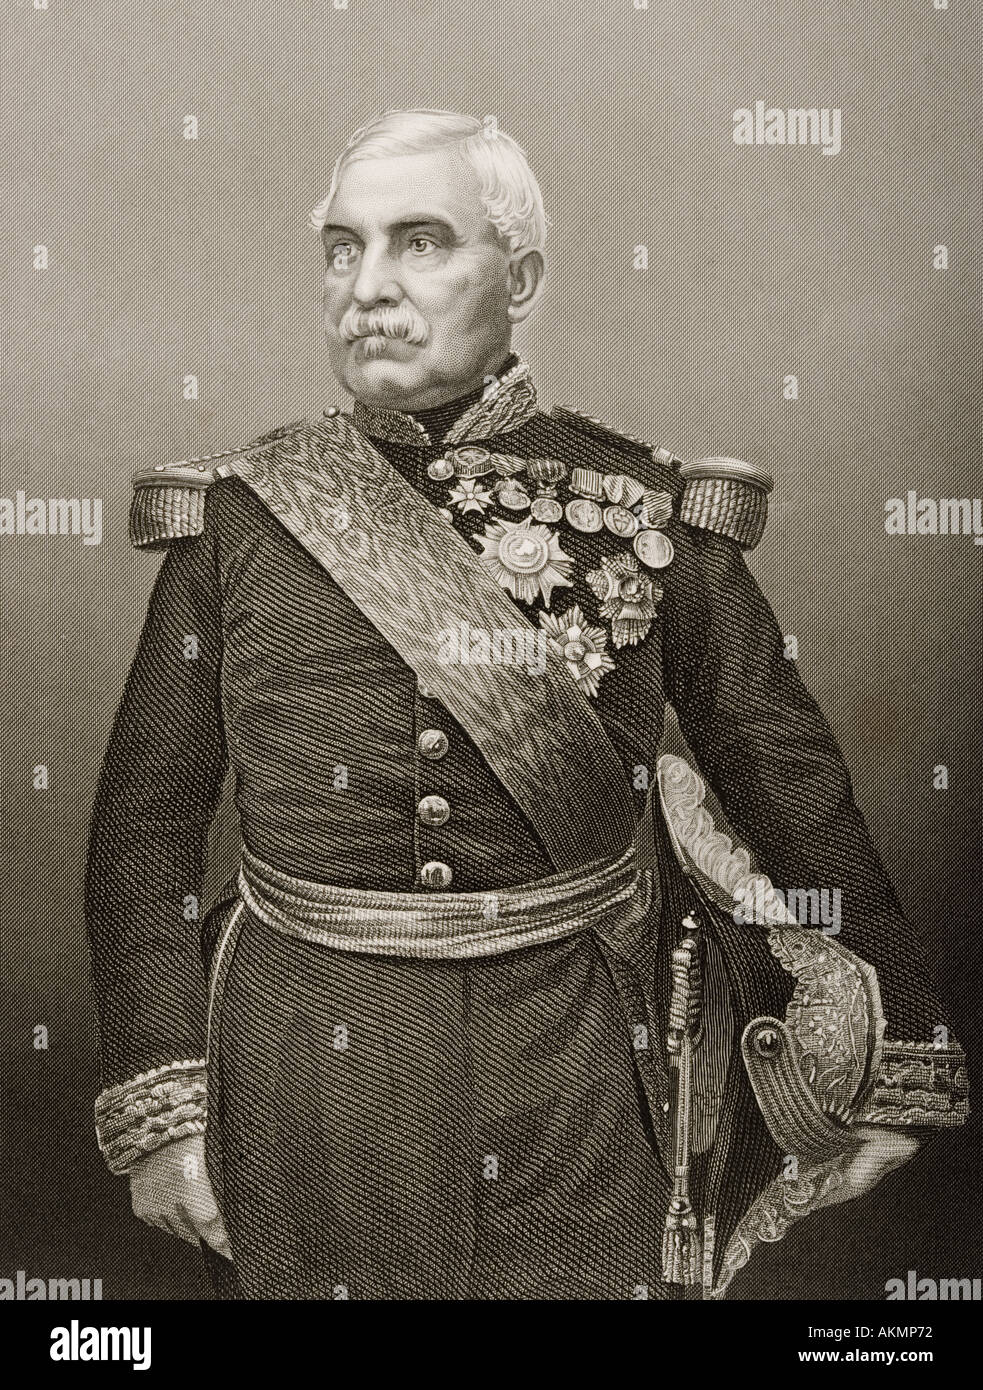 Aimable-Jean-Jacques Pélissier, duc de Malakoff, 1794 - 1864. Maréchal de France. Banque D'Images